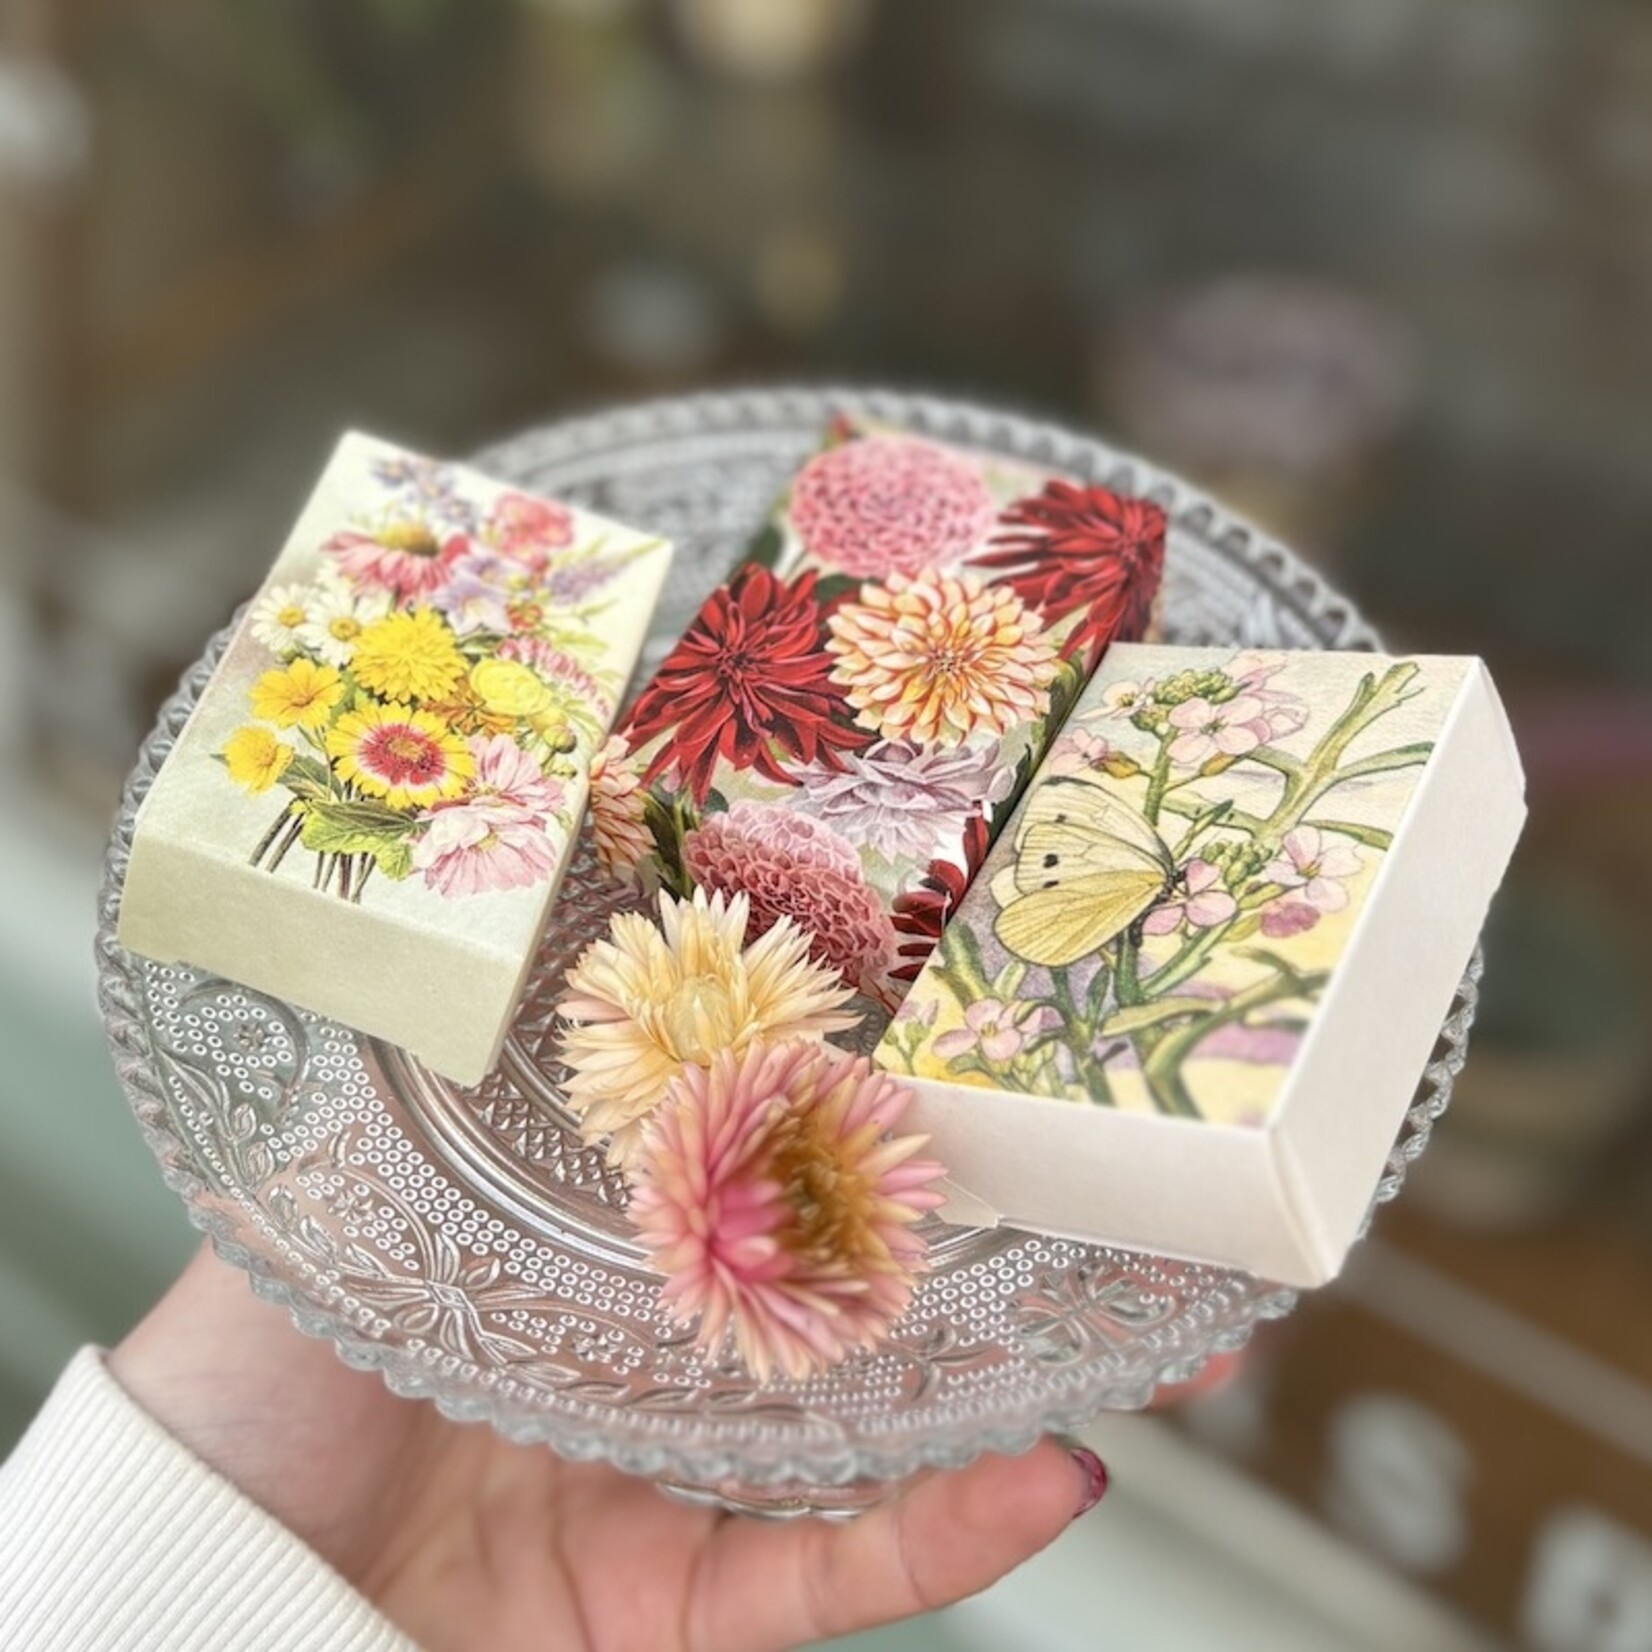 Guest soap - summer bouquets